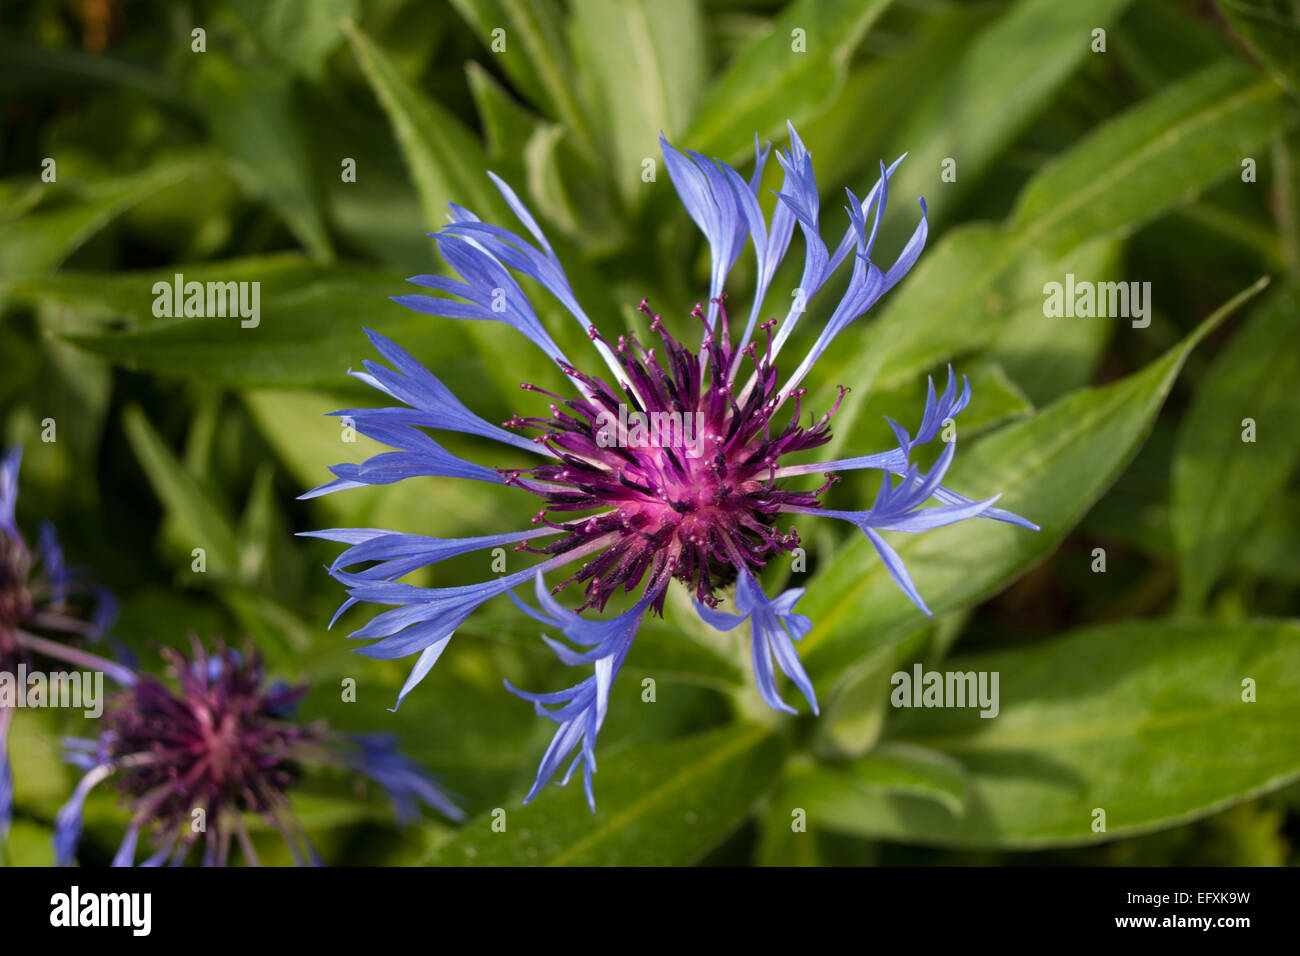 Squarrose Knapweed Flower (Centaurea triumfettii) Stock Photo